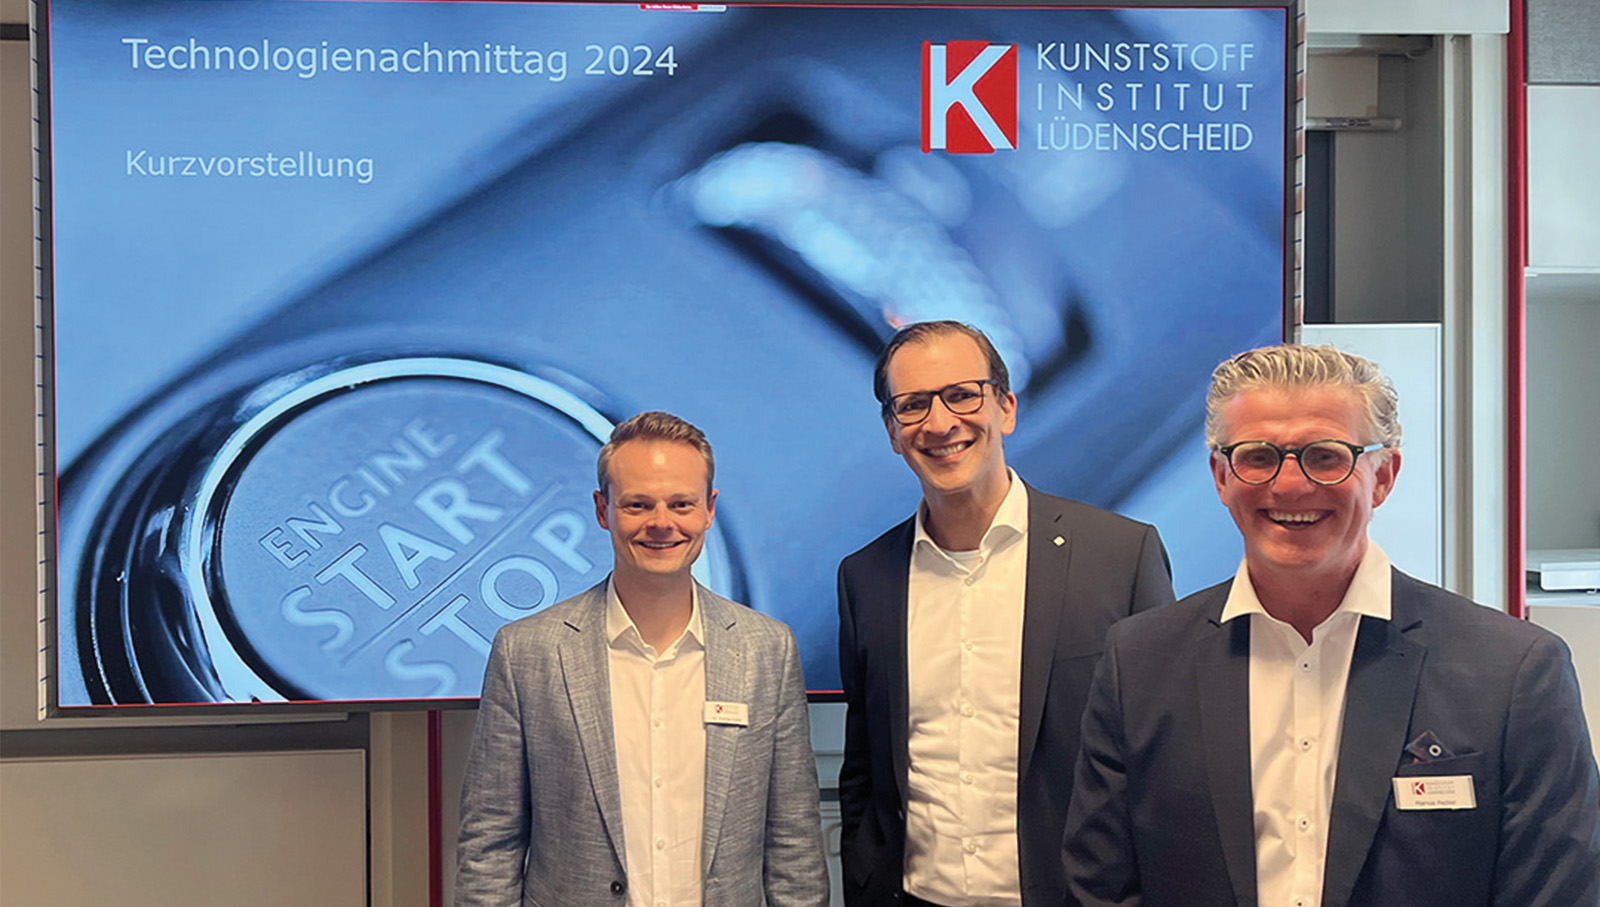 KIMW Lüdenscheid Technologienachmittag 2024: „Eine gelungene Veranstaltung!“